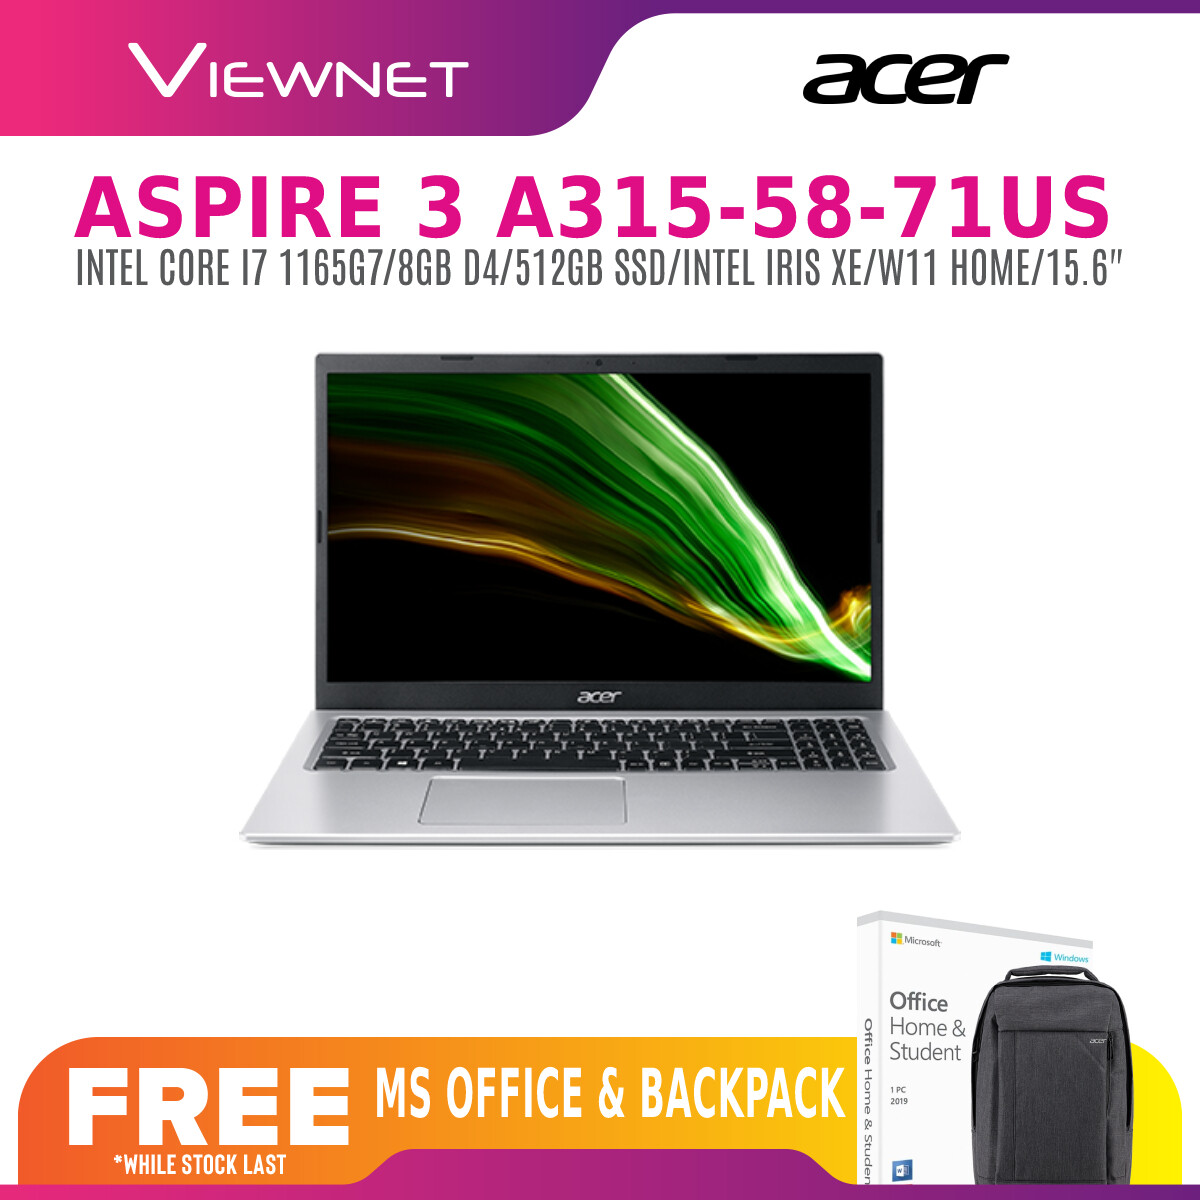 ACER ASPIRE 3 A315-58-71US (I7 1165G7)/A315-58-576S (I5 1135G7)/A315-58-55M4 (I5 1135G7) (8GB DDR4/512GB SSD/INTEL IRIS XE/W10/15.6